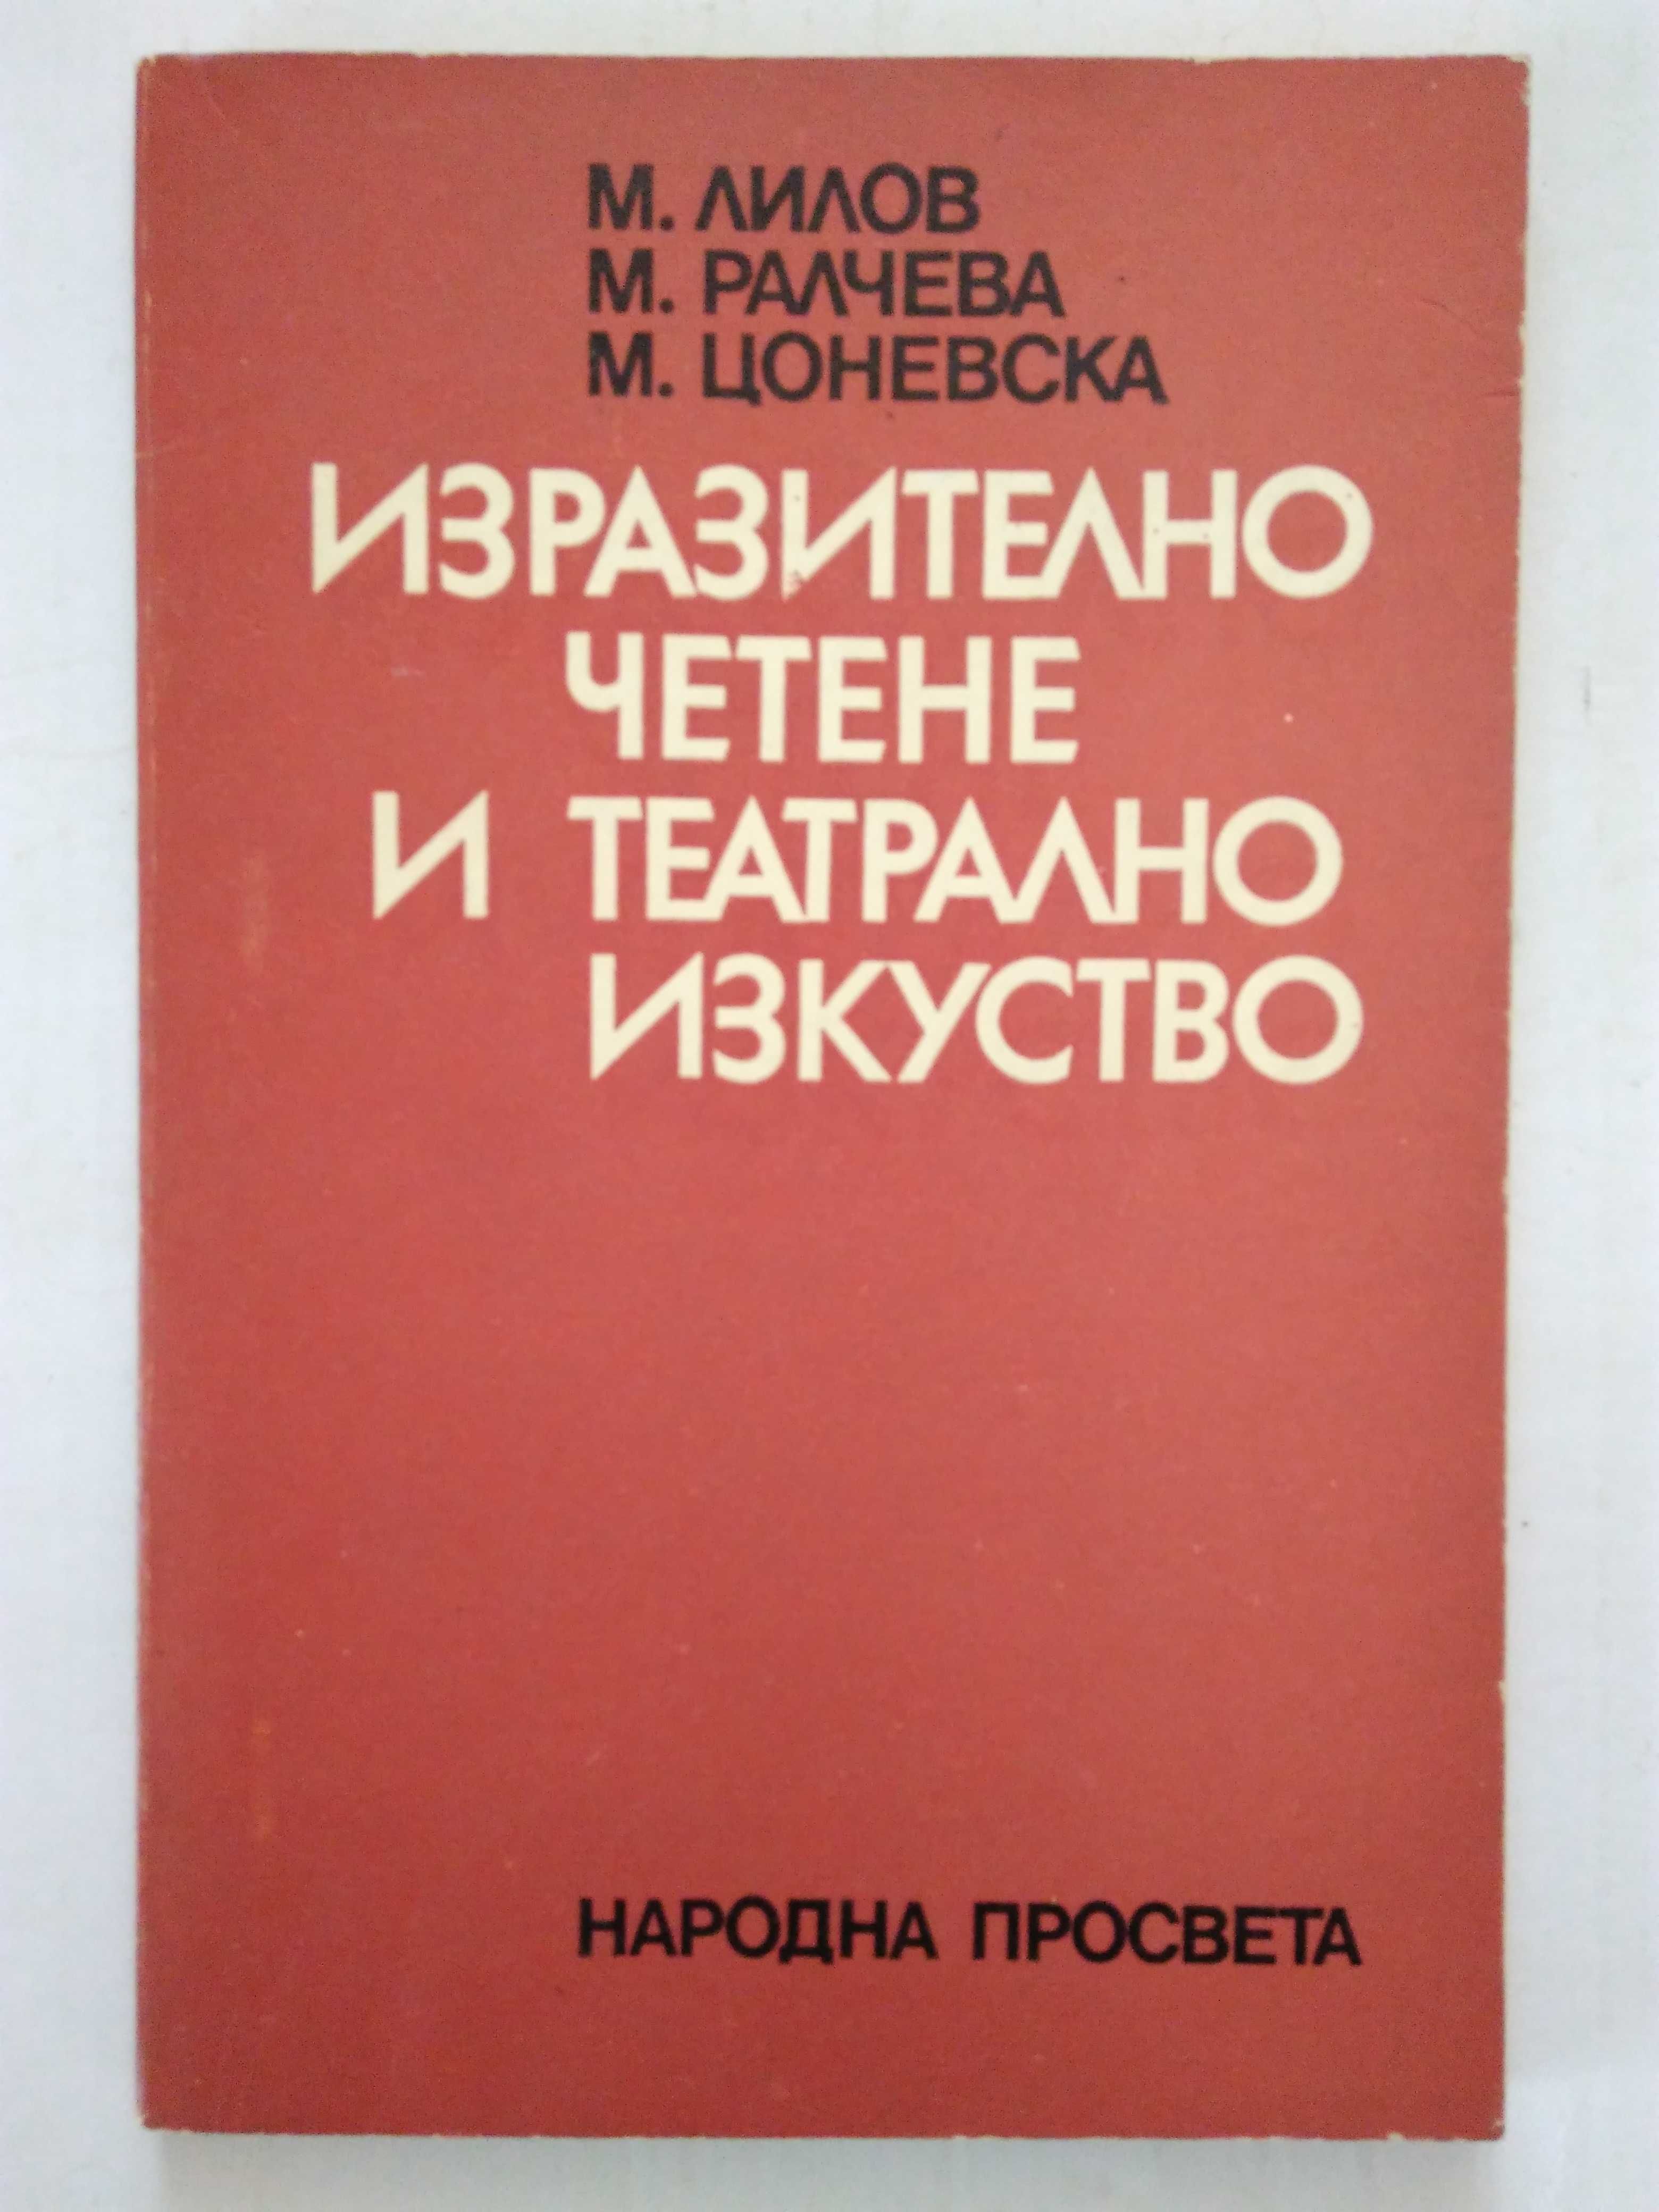 "Изразително четене и театрално изкуство"Лилов,Ралчева,Цоневска1979 г.